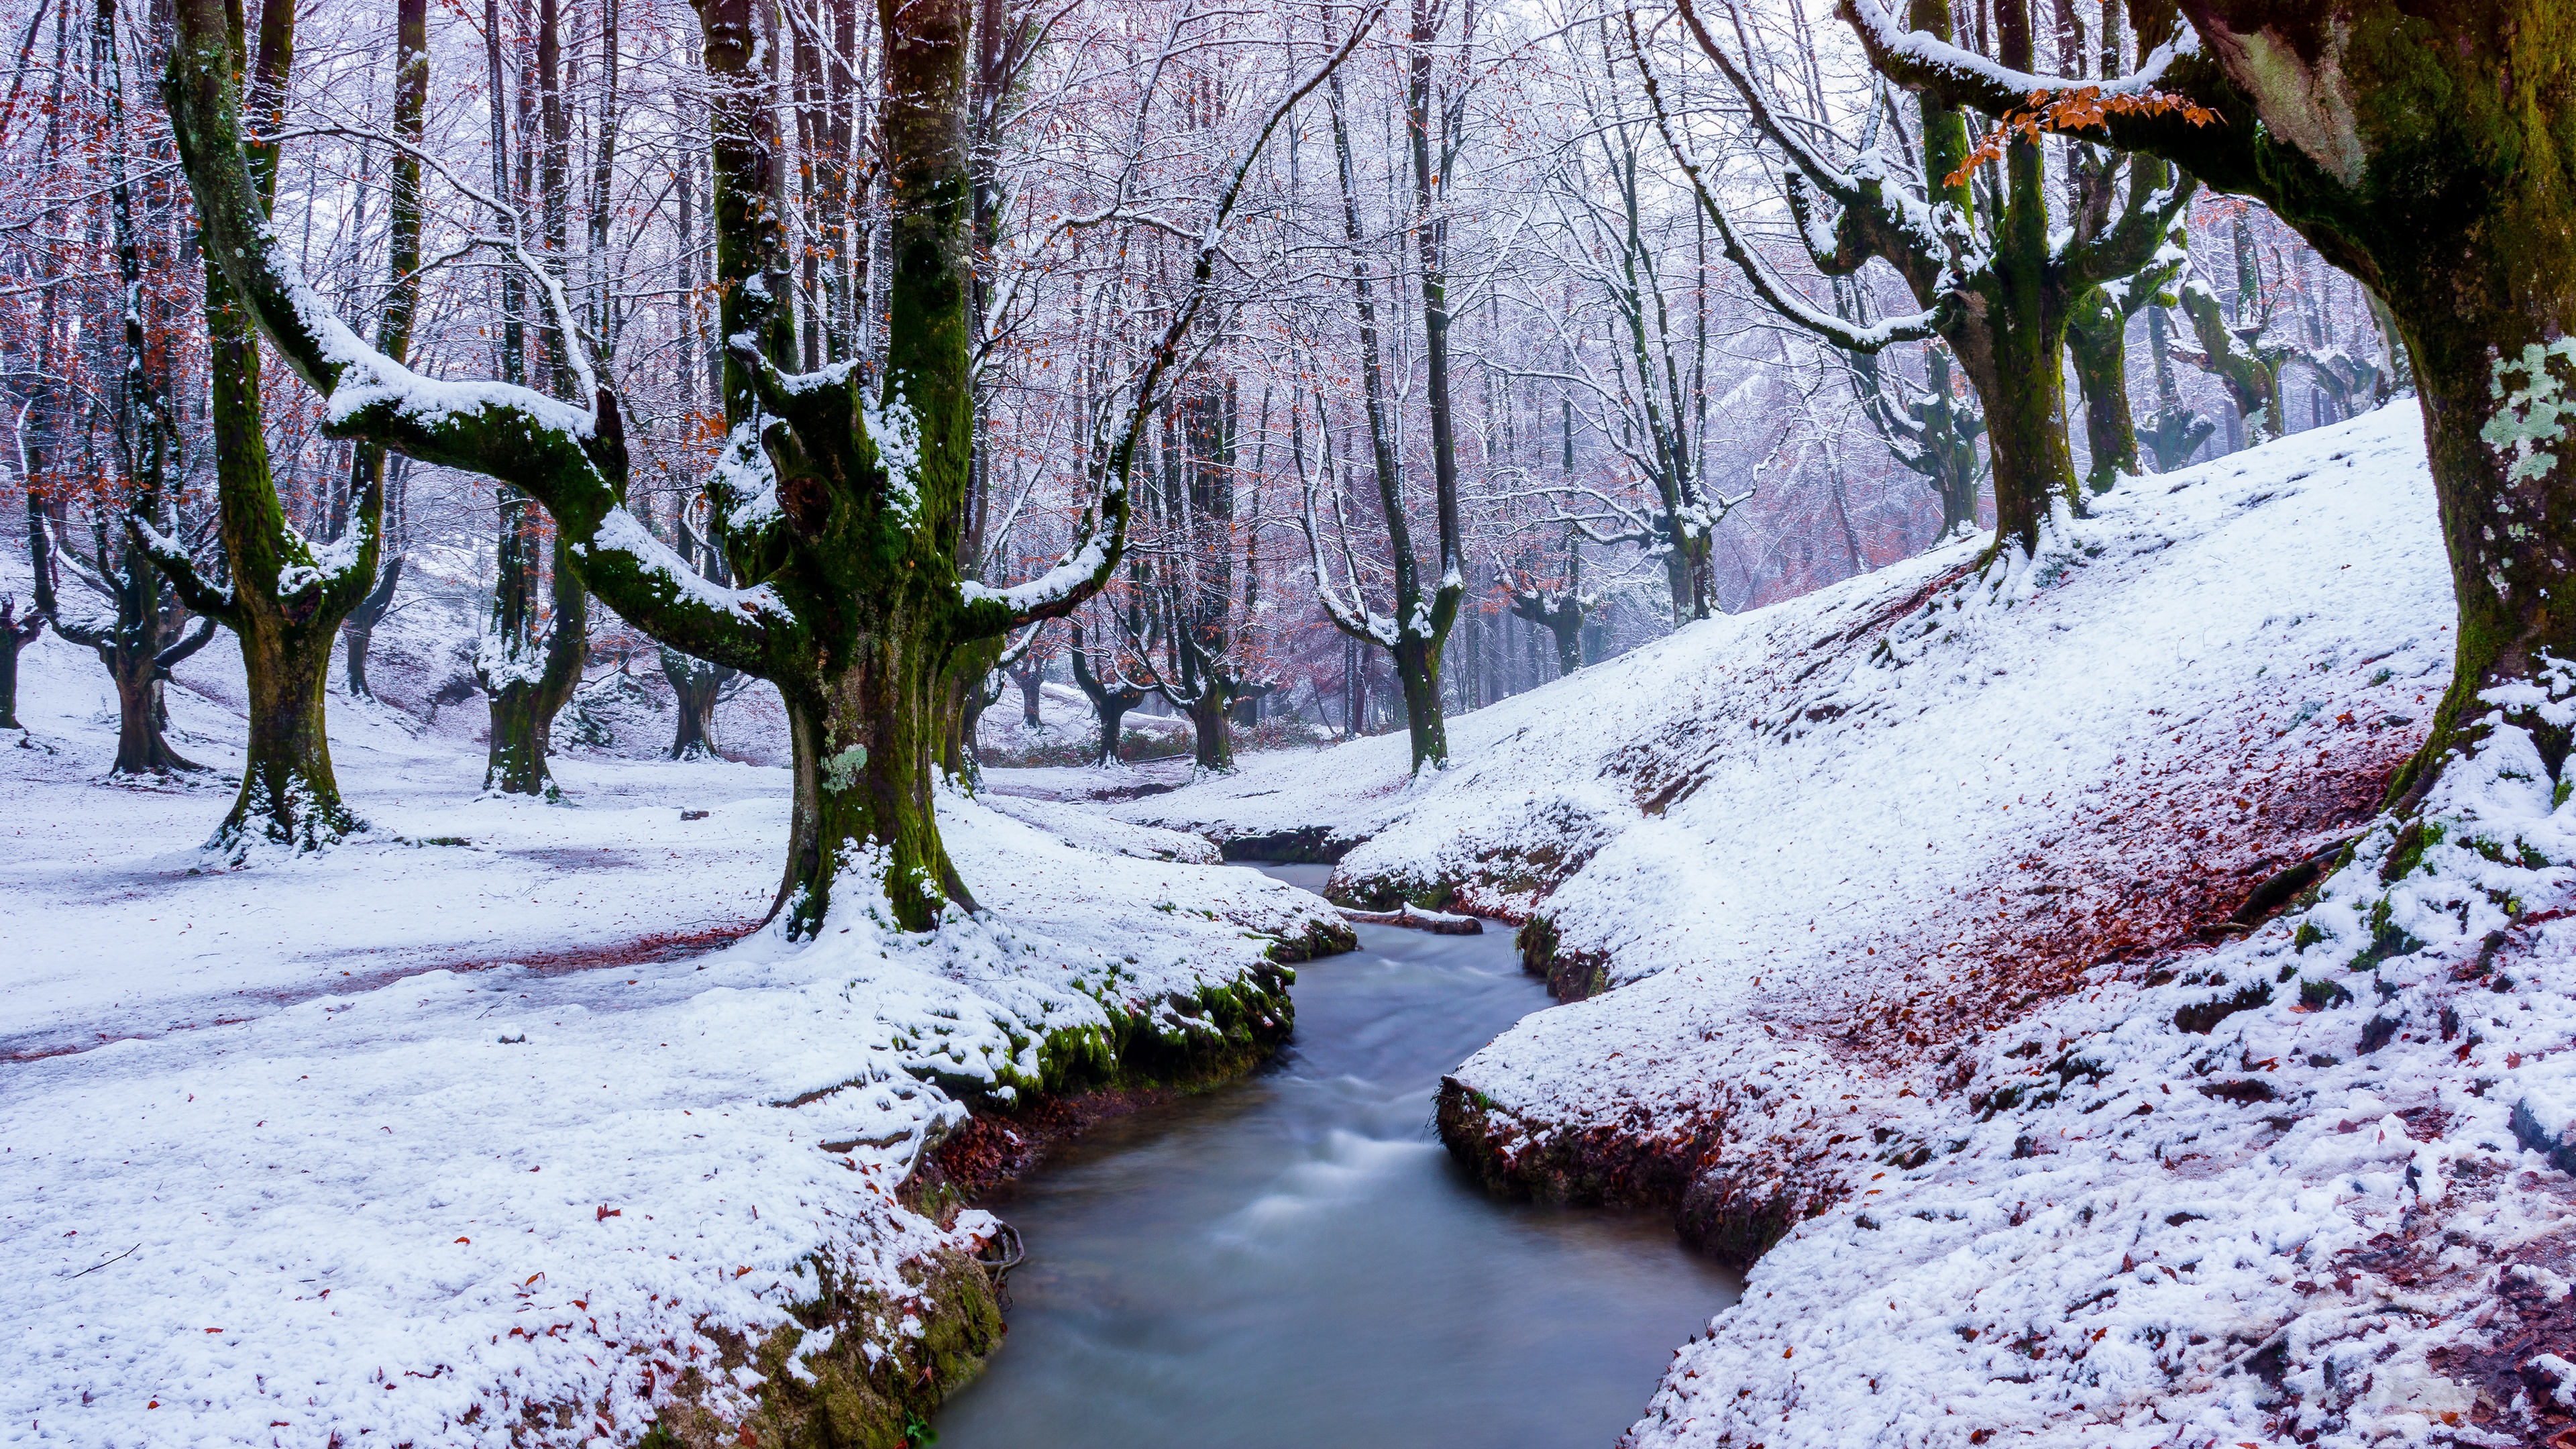 Скачать обои бесплатно Зима, Природа, Снег, Лес, Дерево, Ручей, Земля/природа картинка на рабочий стол ПК